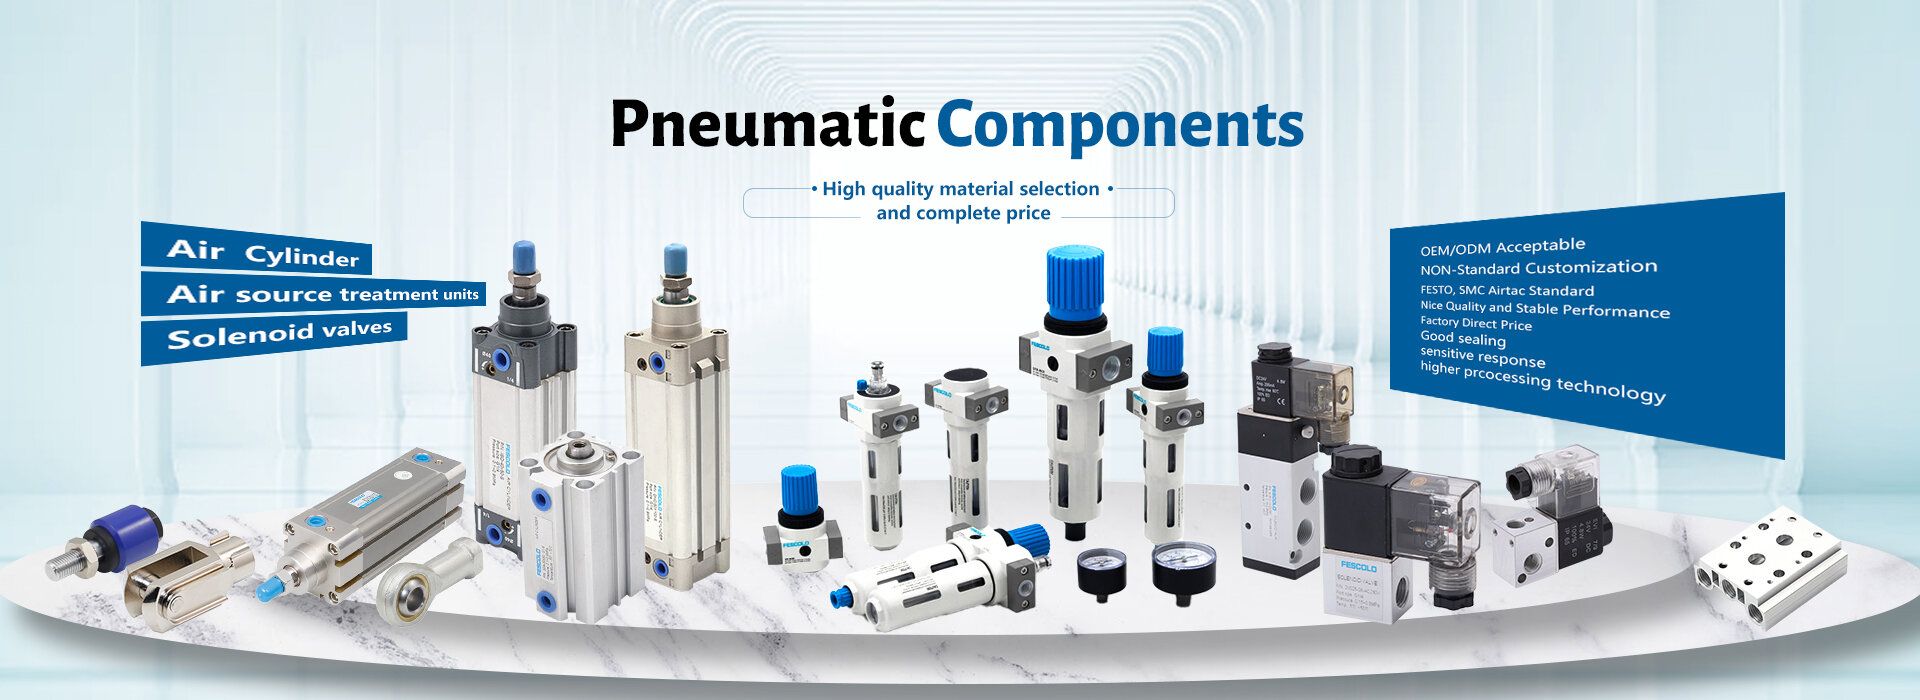 Pneumatic Components